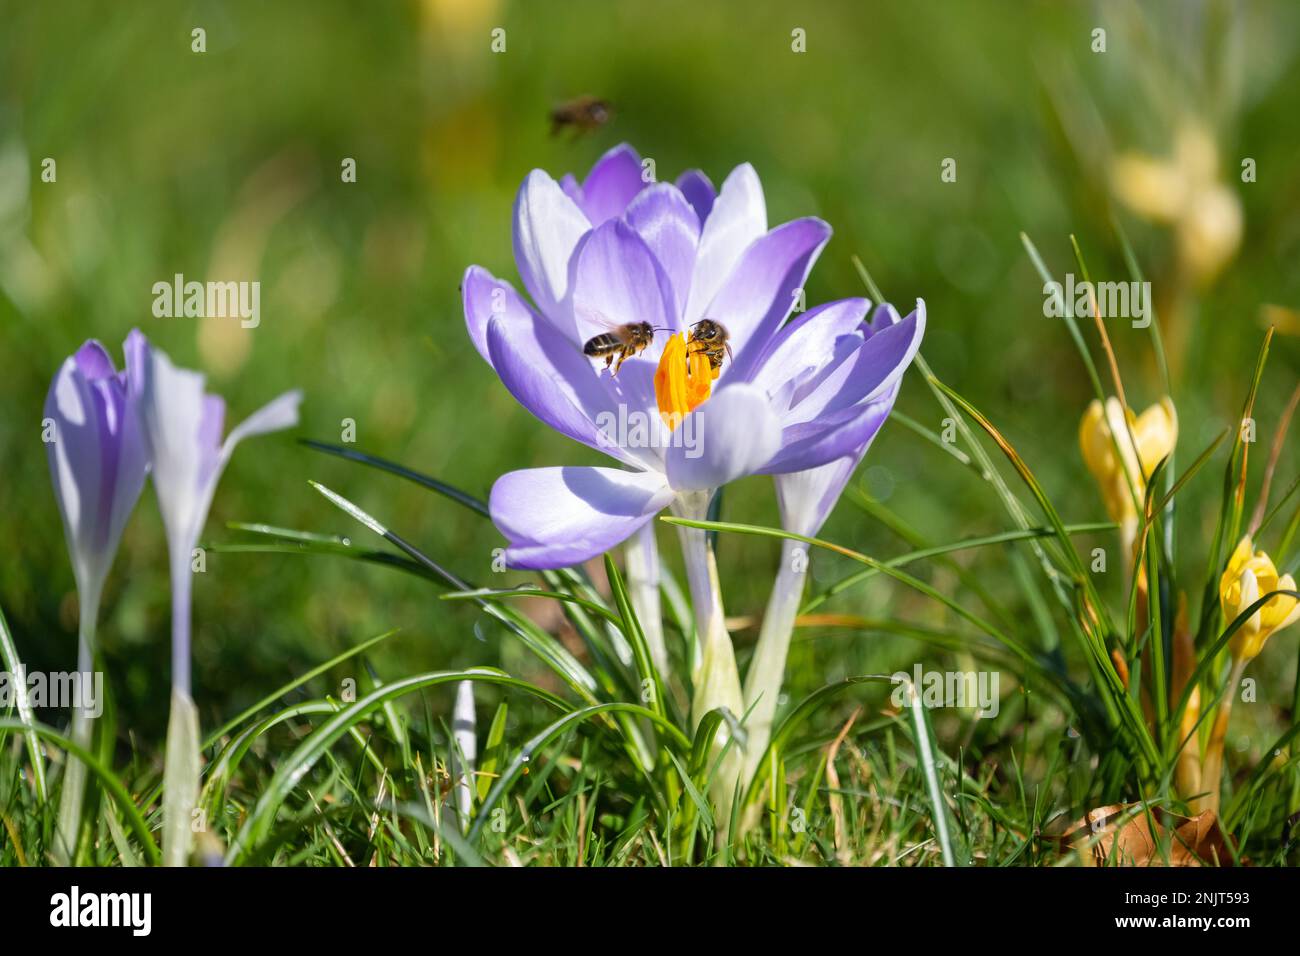 Crocus tommasinianus - crocus précoce et source de pollen pour les abeilles - floraison dans l'herbe en février - Écosse, Royaume-Uni Banque D'Images